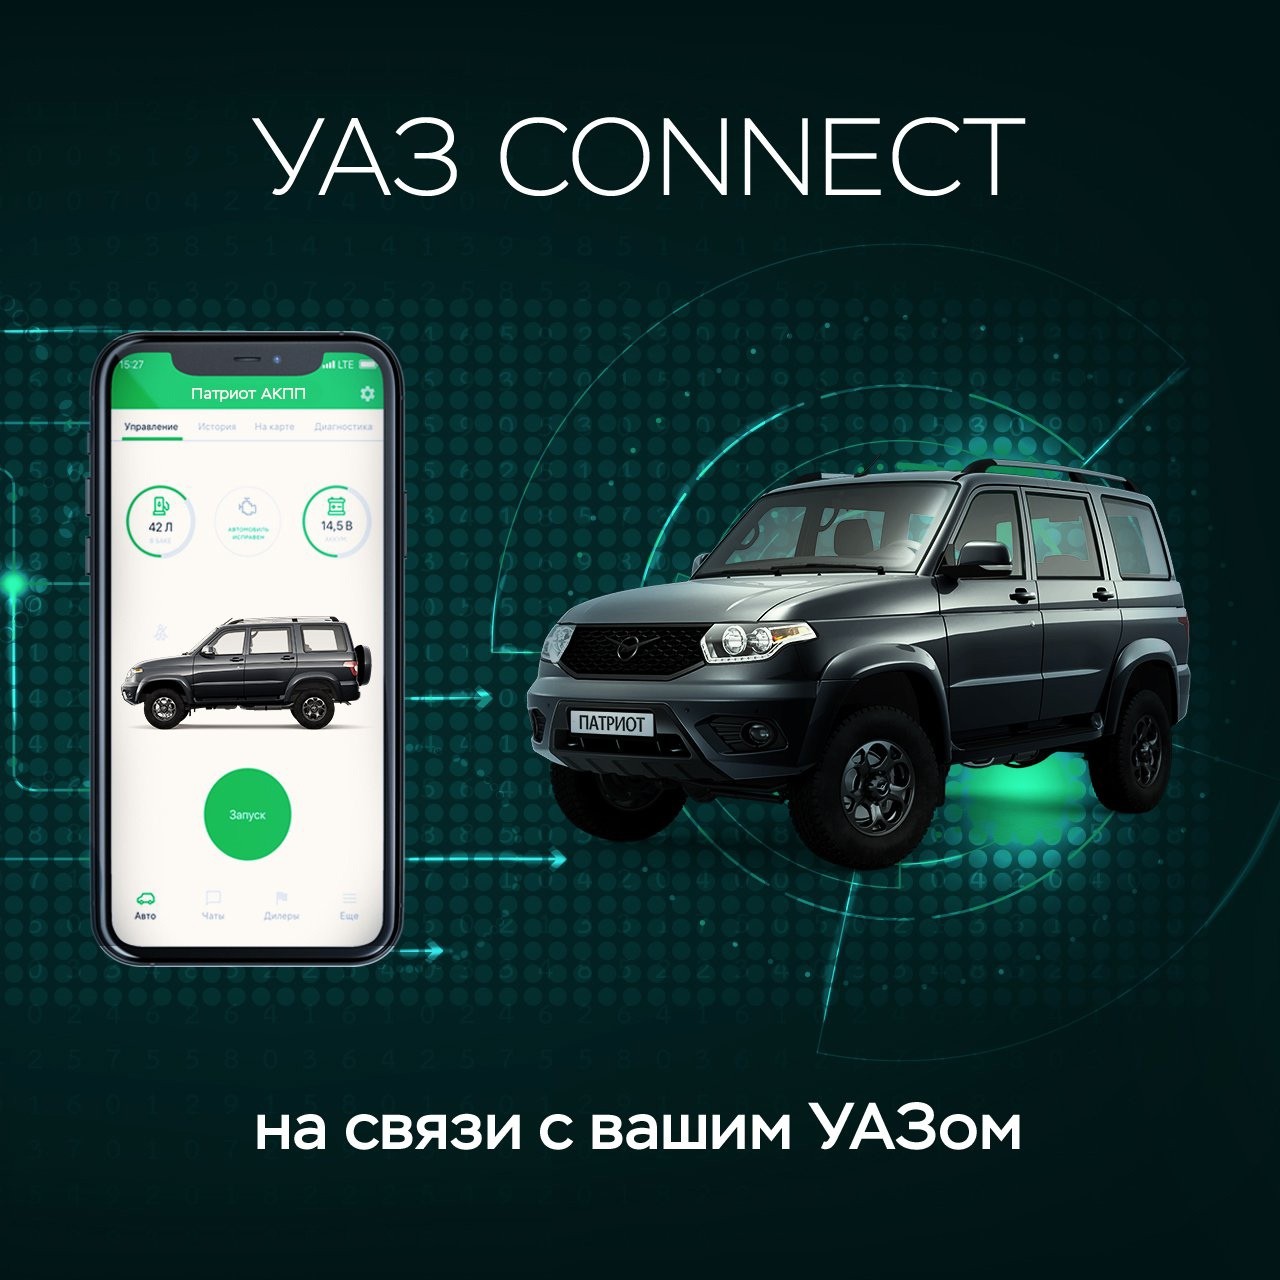 Сервис УАЗ Connect стал доступен для частных владельцев автомобилей УАЗ в России